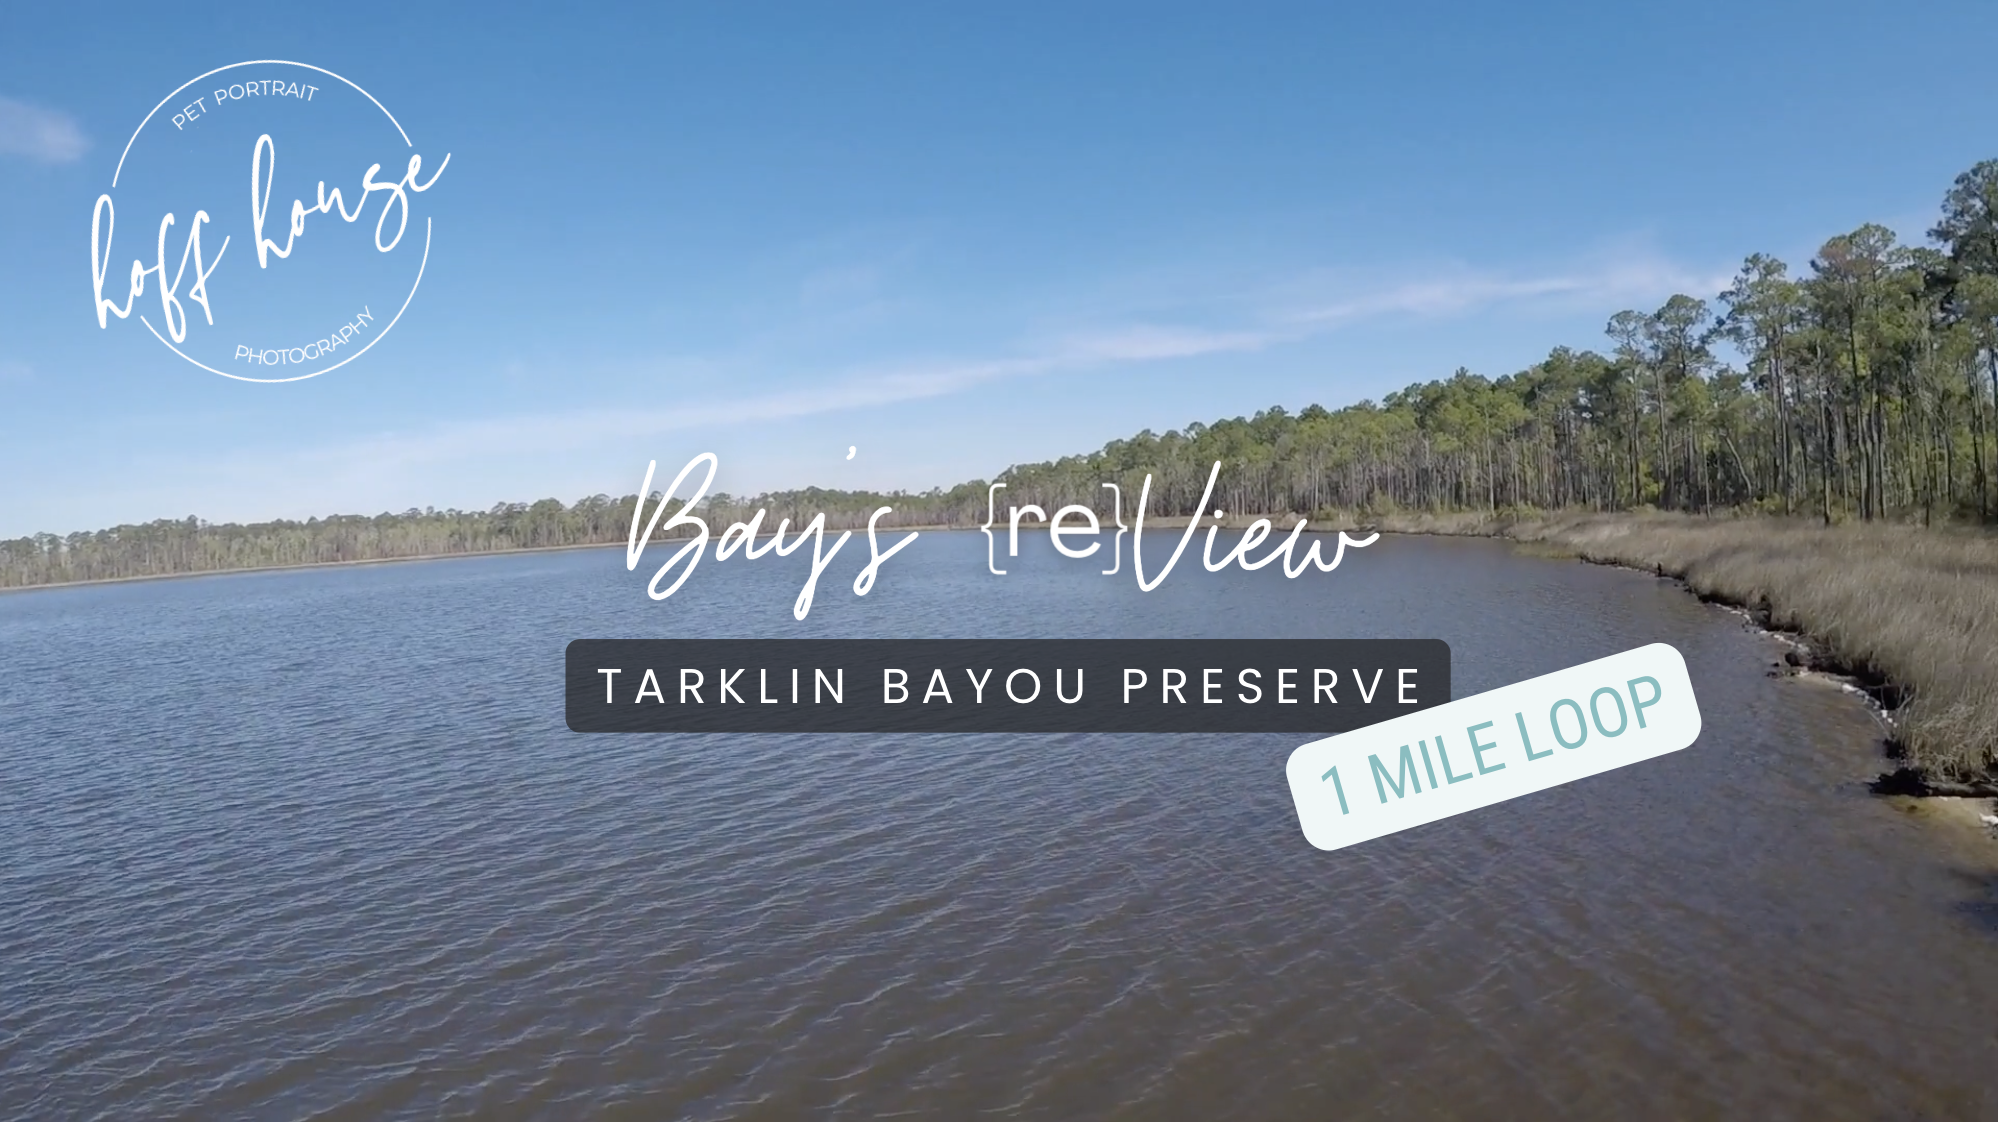 Bay's reView of Tarklin Bayou Preserve